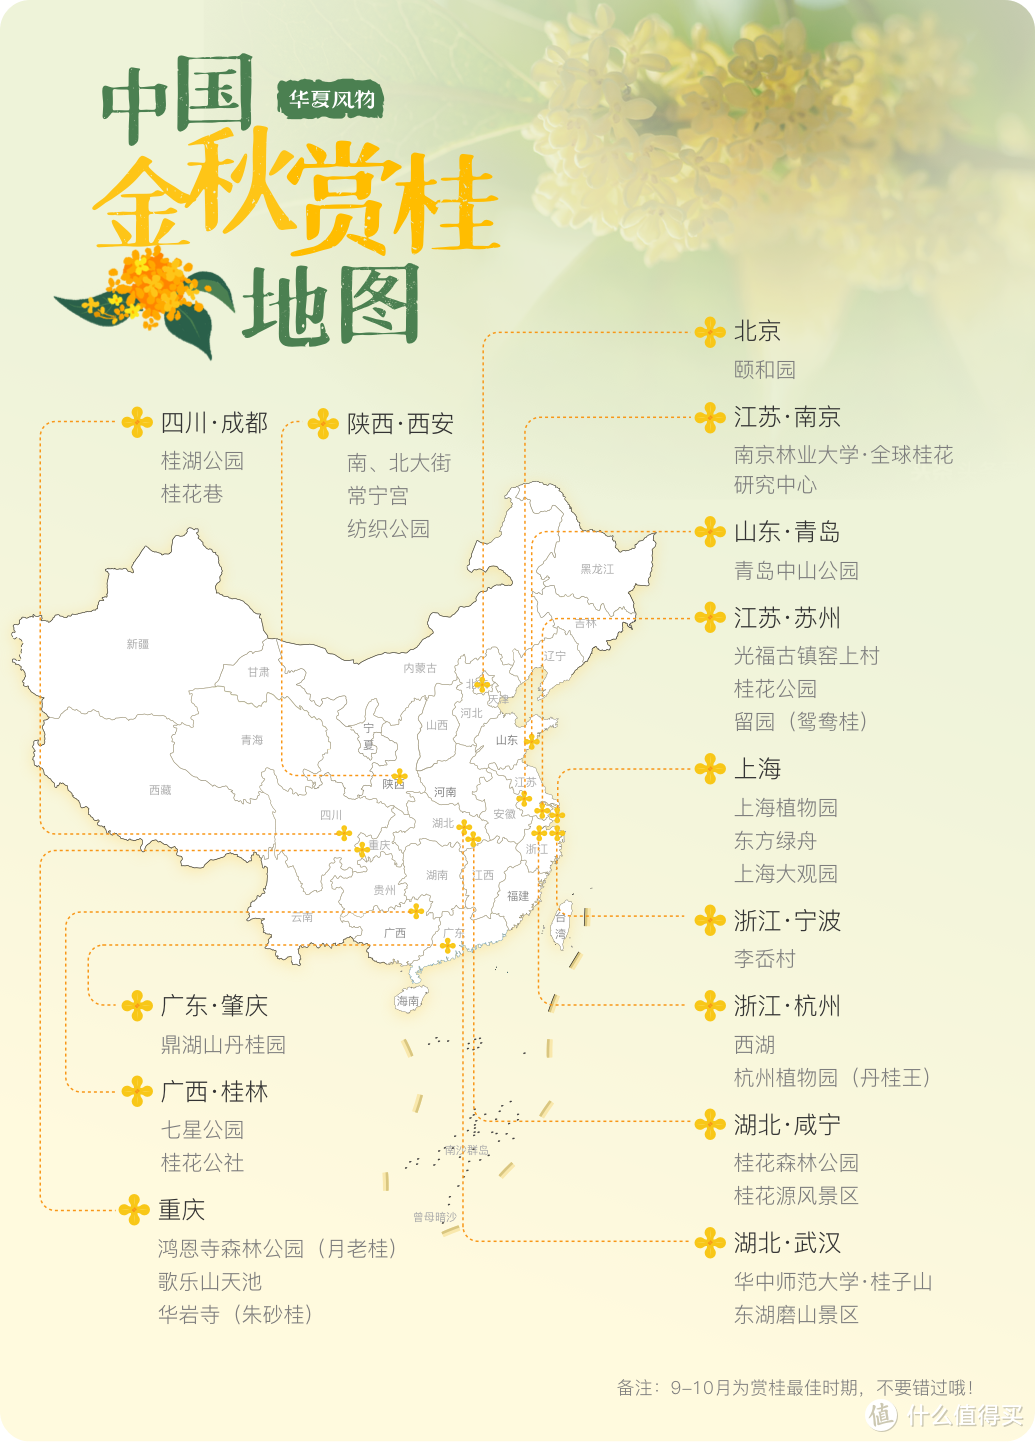 中国金秋赏桂地图 ©华夏风物 （备注：图内括注为赏桂地主要看点）